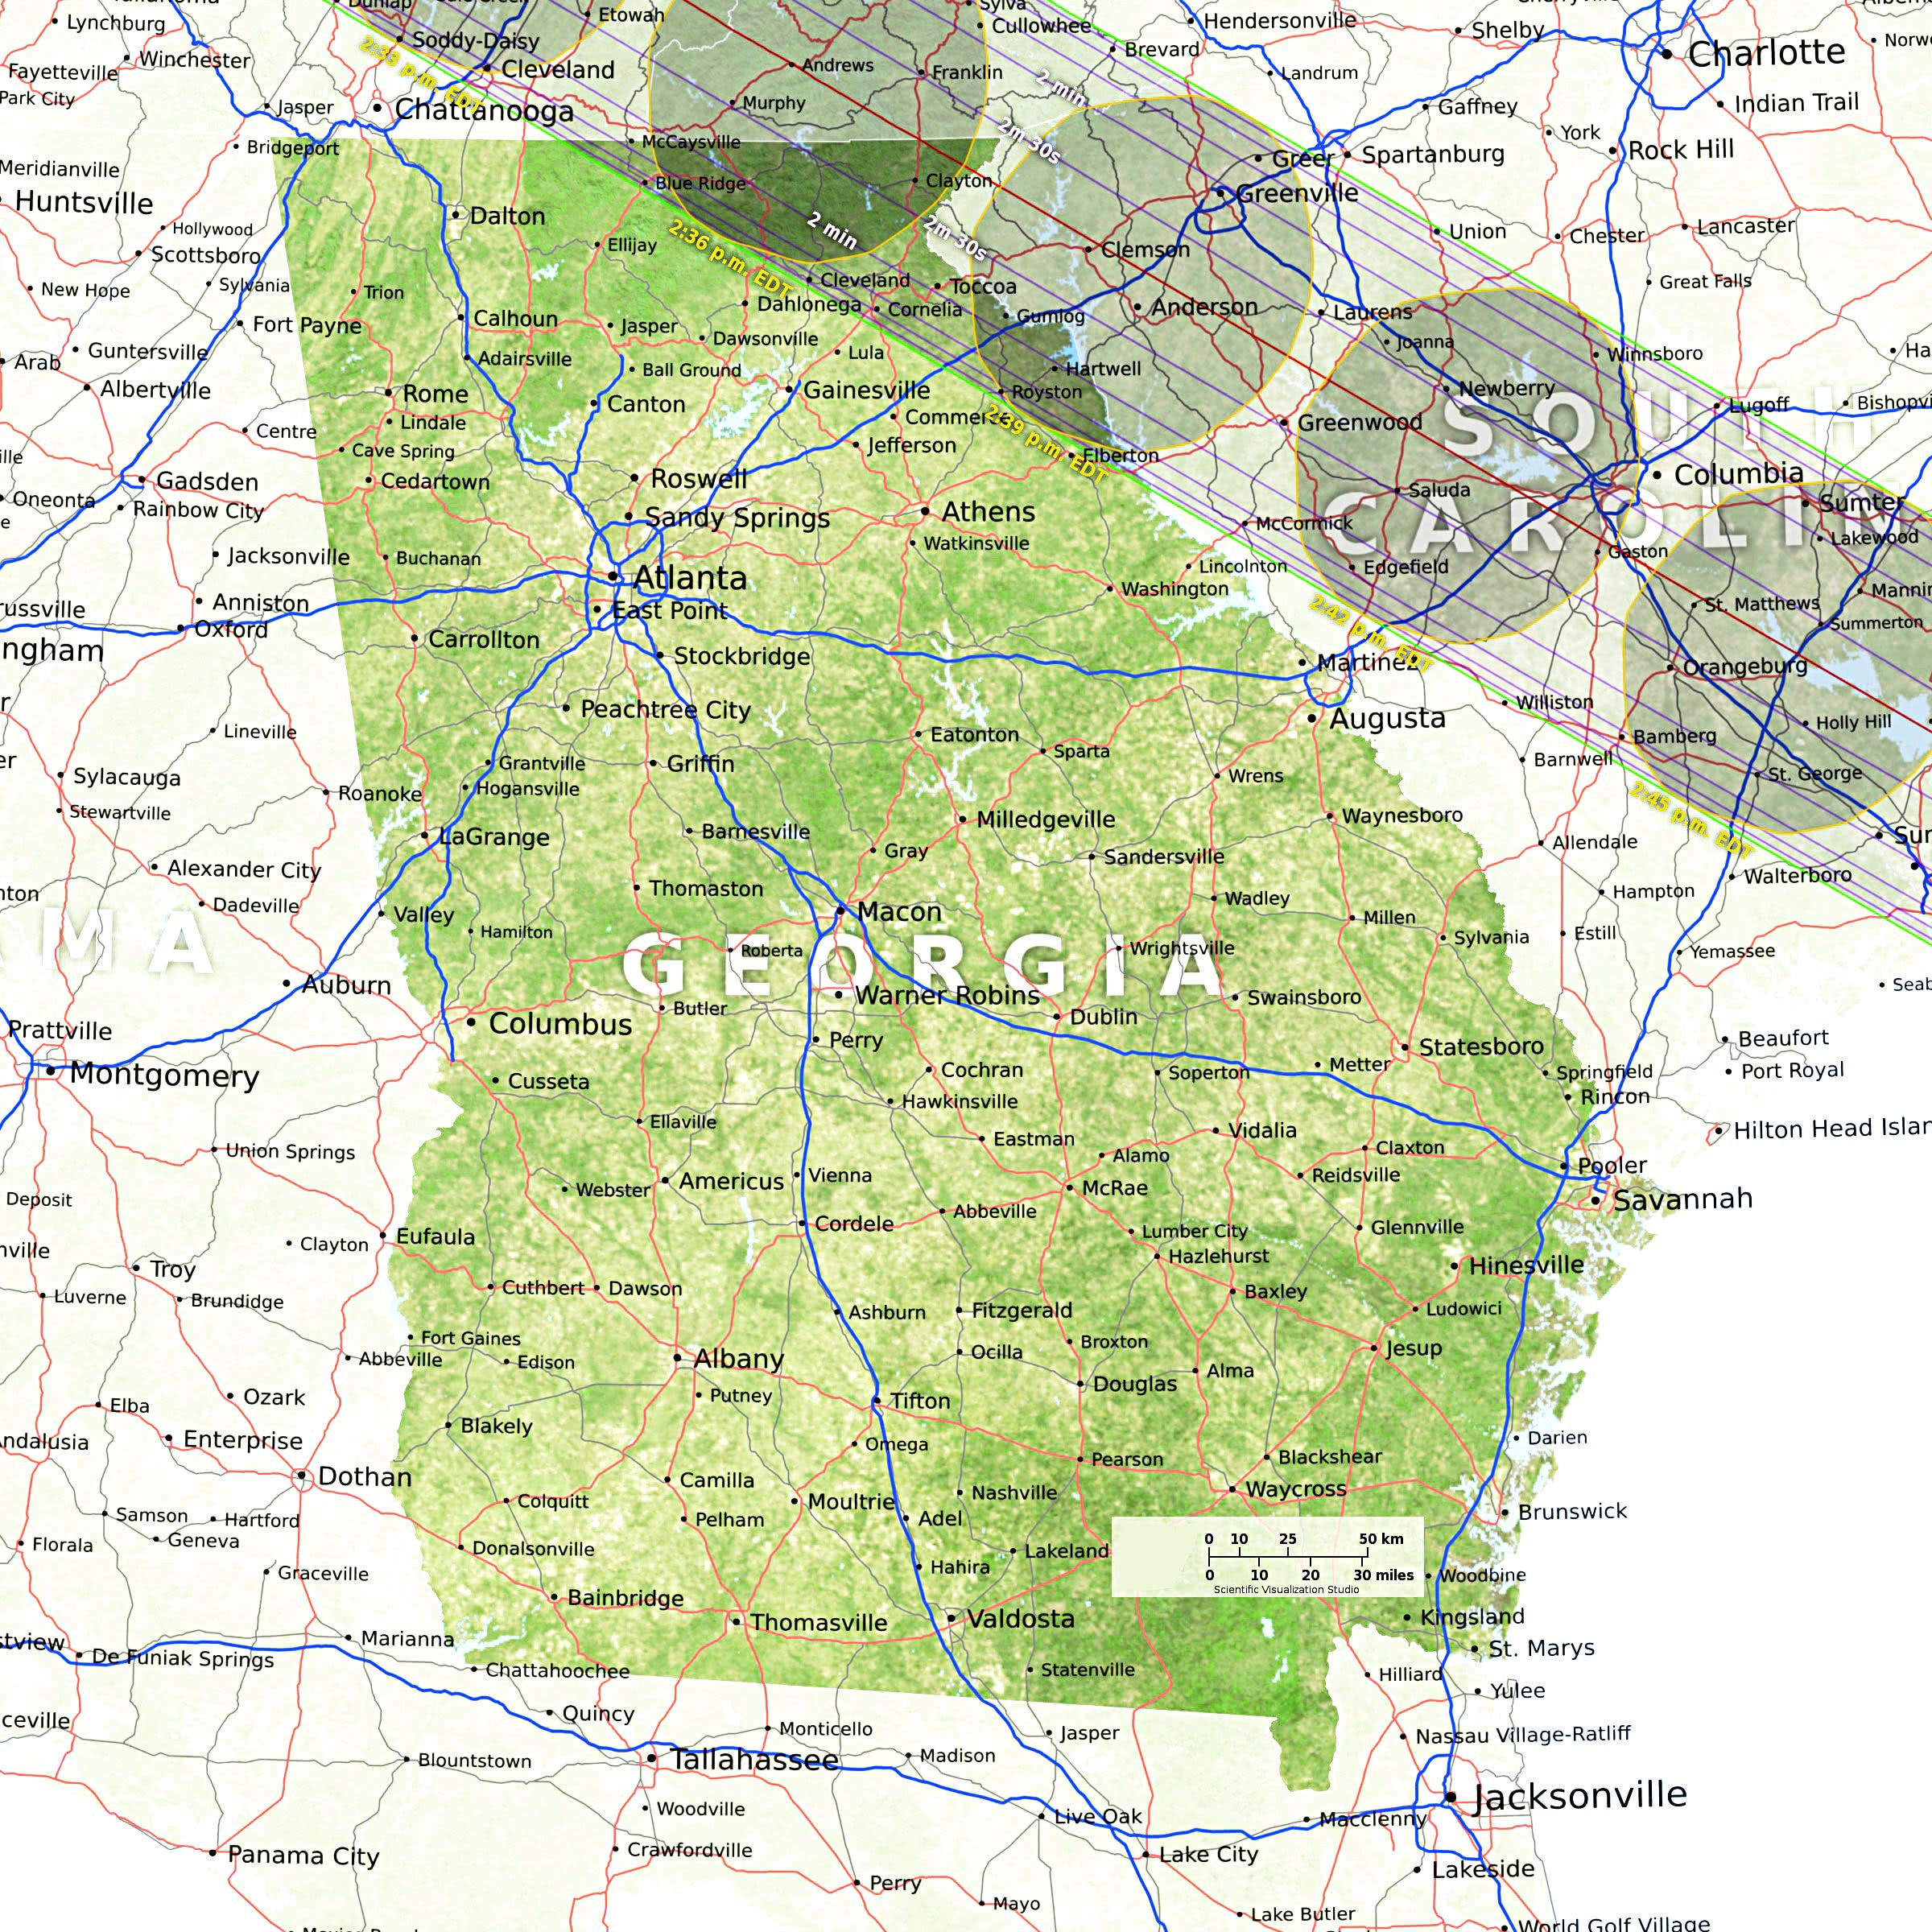 Georgia eclipse path